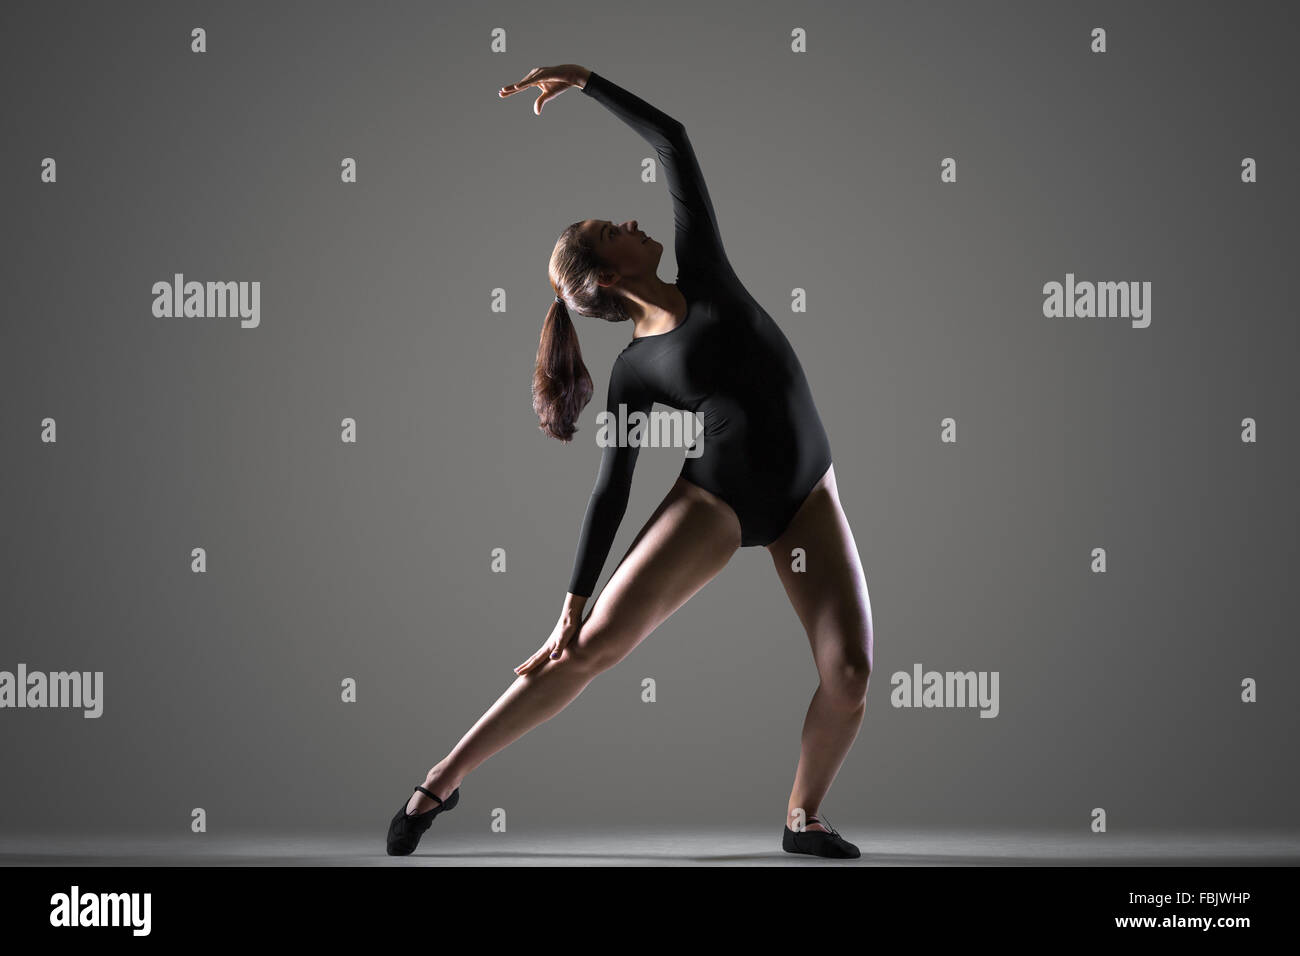 Porträt von schöne junge moderne Tänzerin Frau im schwarzen Trikot, Sport, tanzen, Ganzkörperansicht, Studio, dunkler Hintergrund Stockfoto